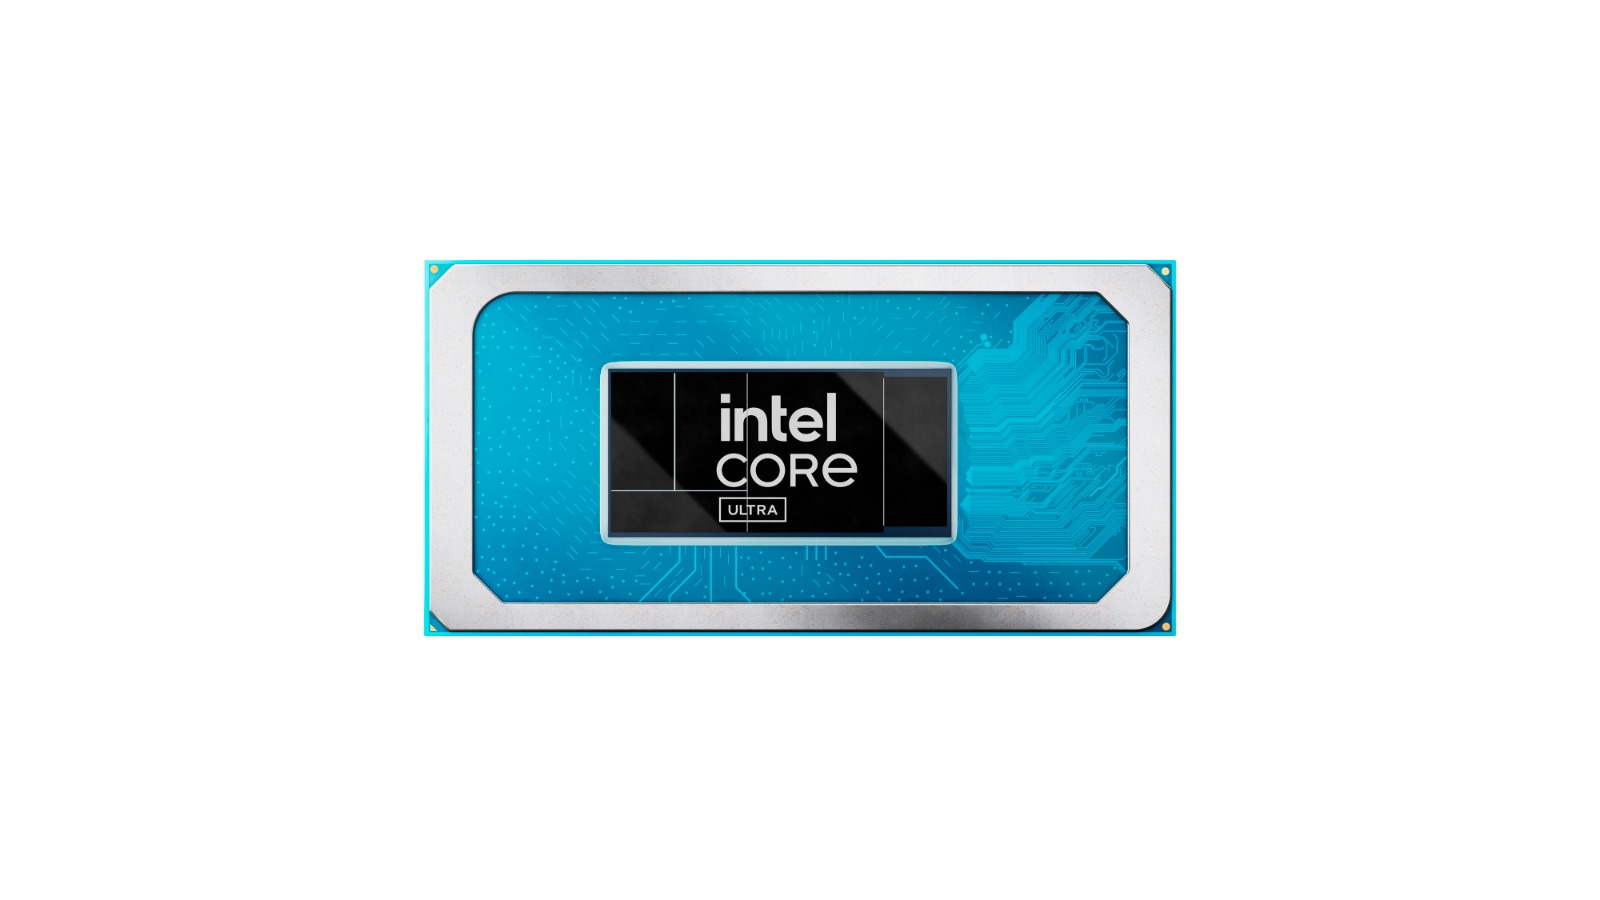 Foto de Intel Core Ultra inaugura la era de la PC con IA